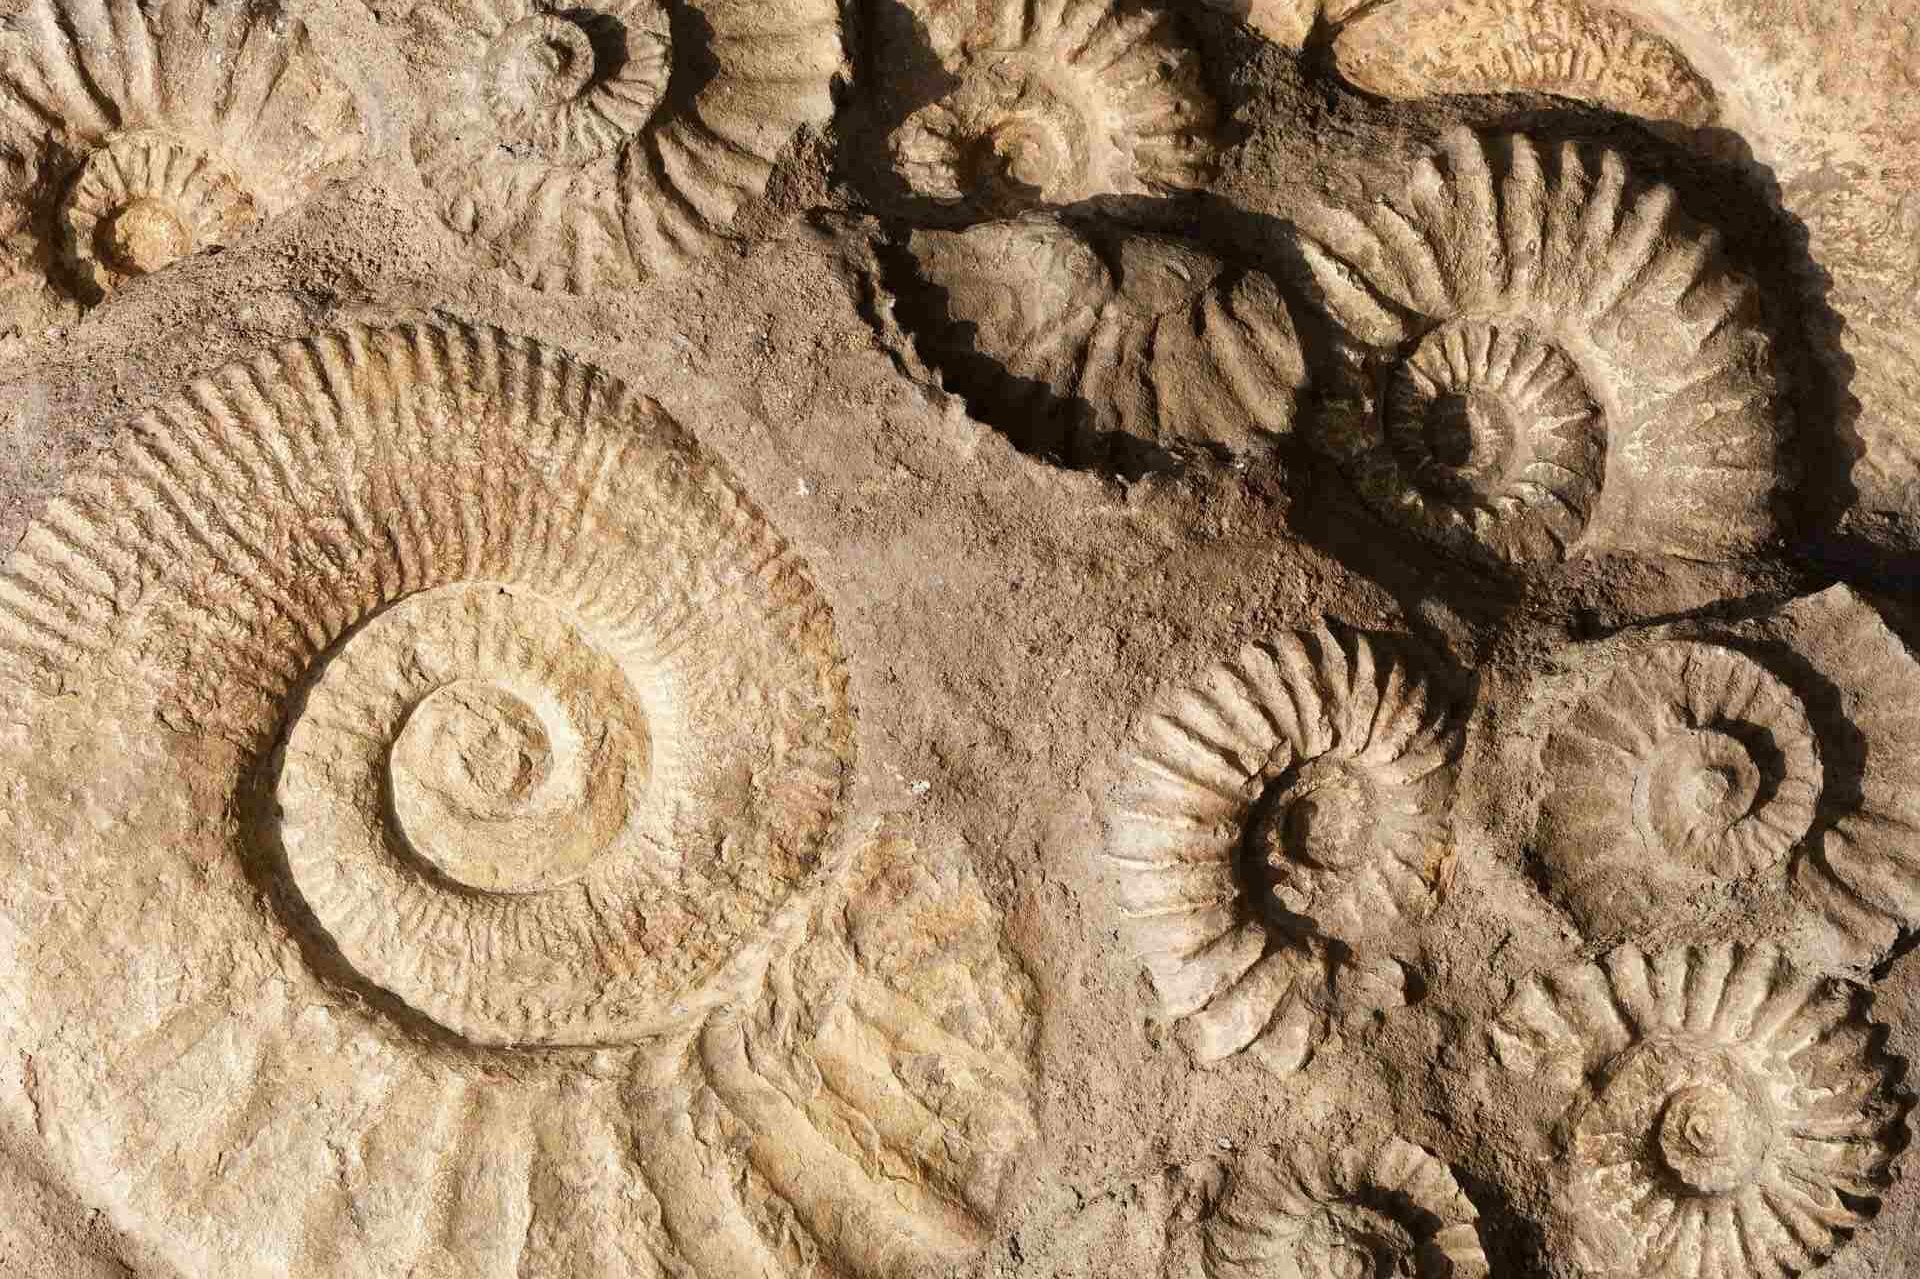 Les fouilles des conduites d'eaux usées d'Auckland révèlent un étonnant "trésor de fossiles" 1